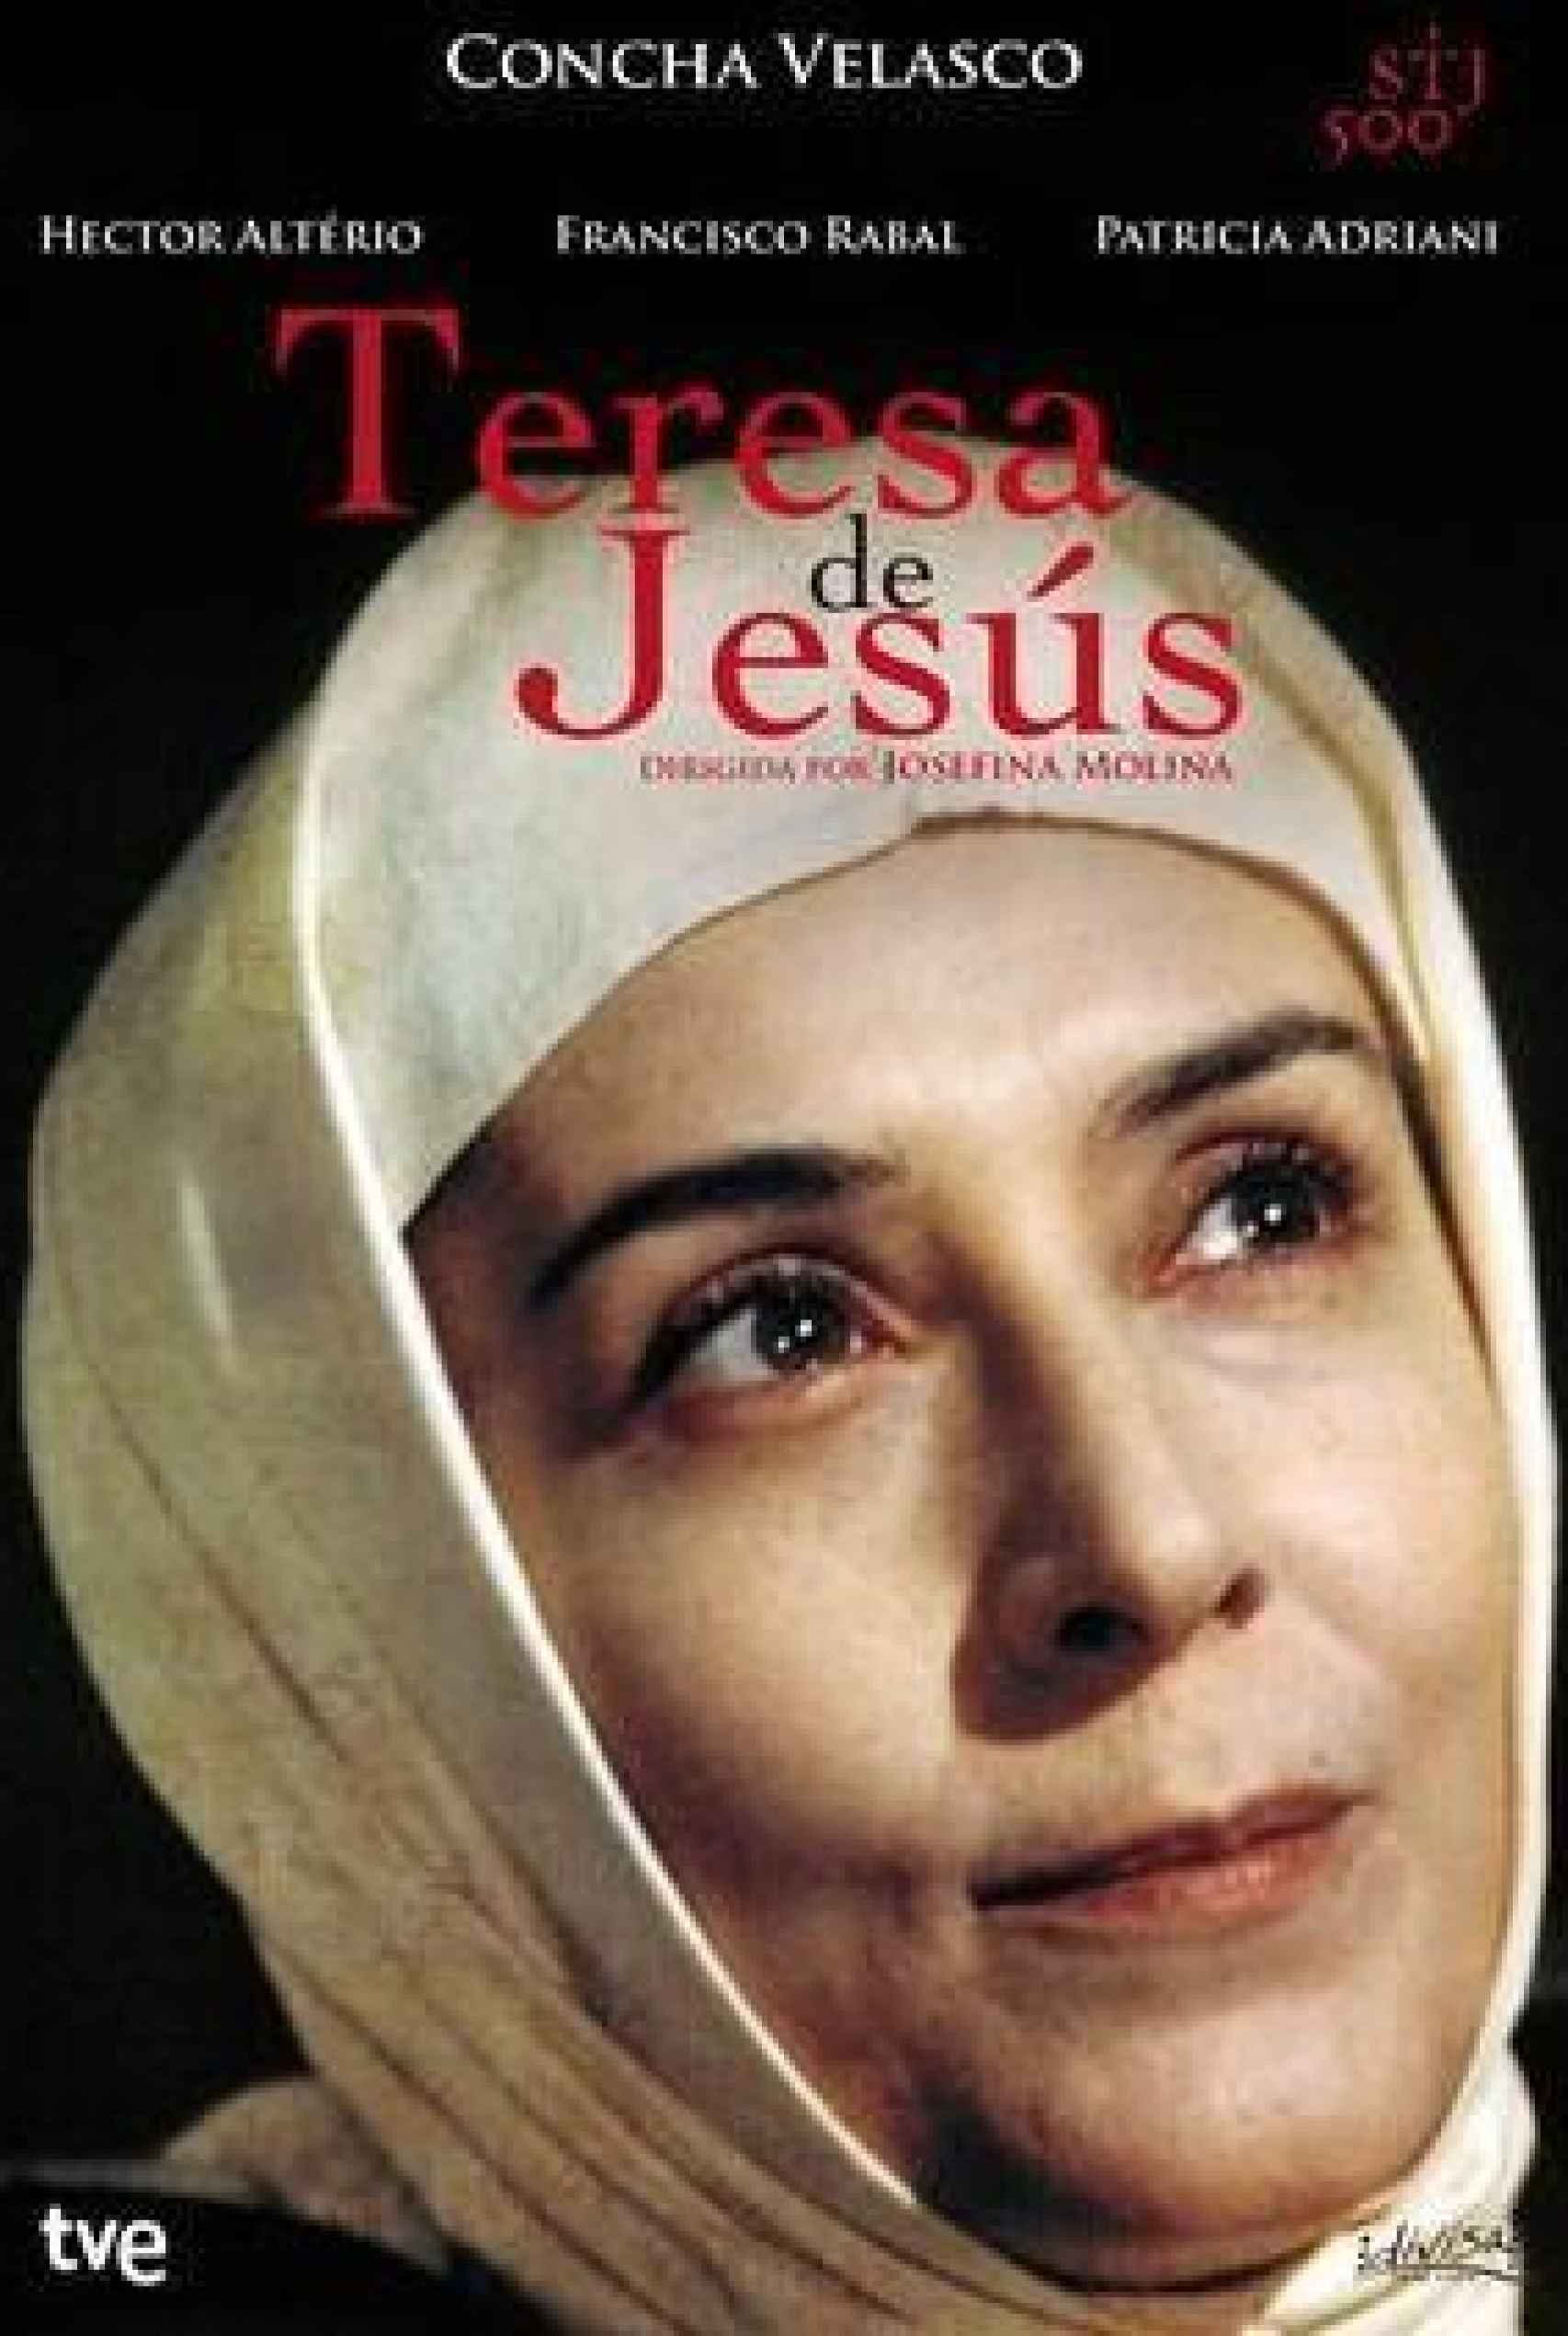 Portada de la serie 'Teresa de Jesús', protagonizada por Concha Velasco.